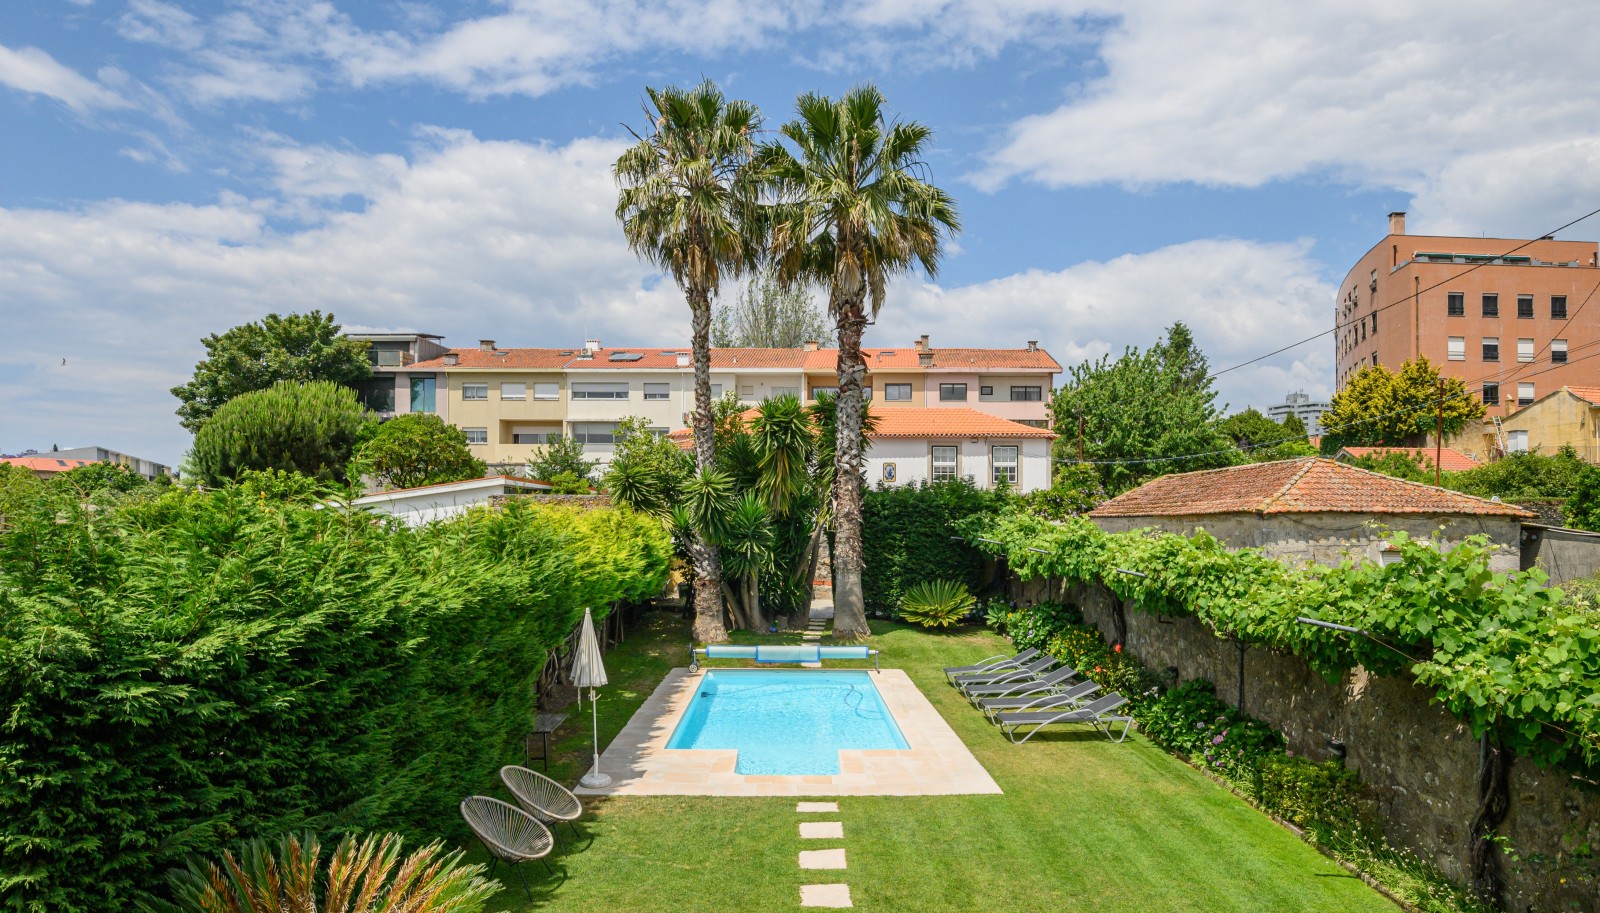 Villa mit Pool und Garten, zu verkaufen, in Serralves, Porto, Portugal_227427